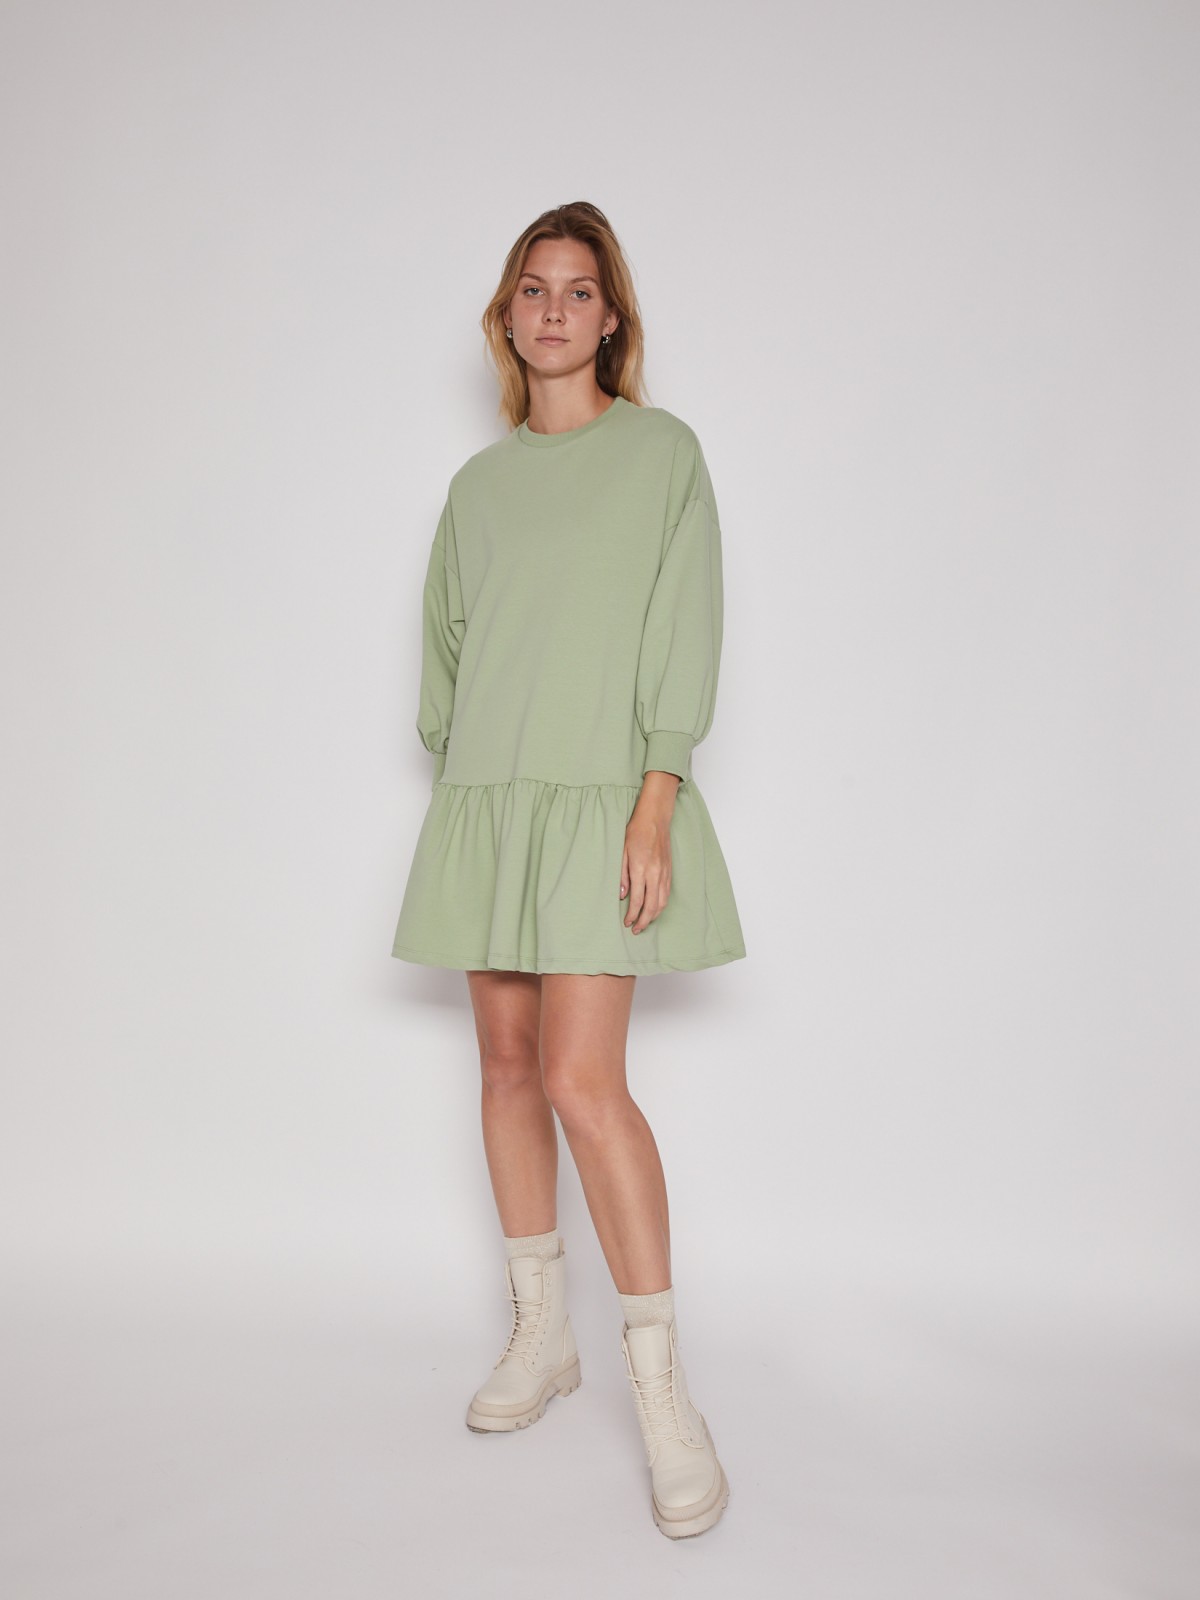 Короткое платье-свитшот Zolla, цвет Светло-зеленый, размер XL